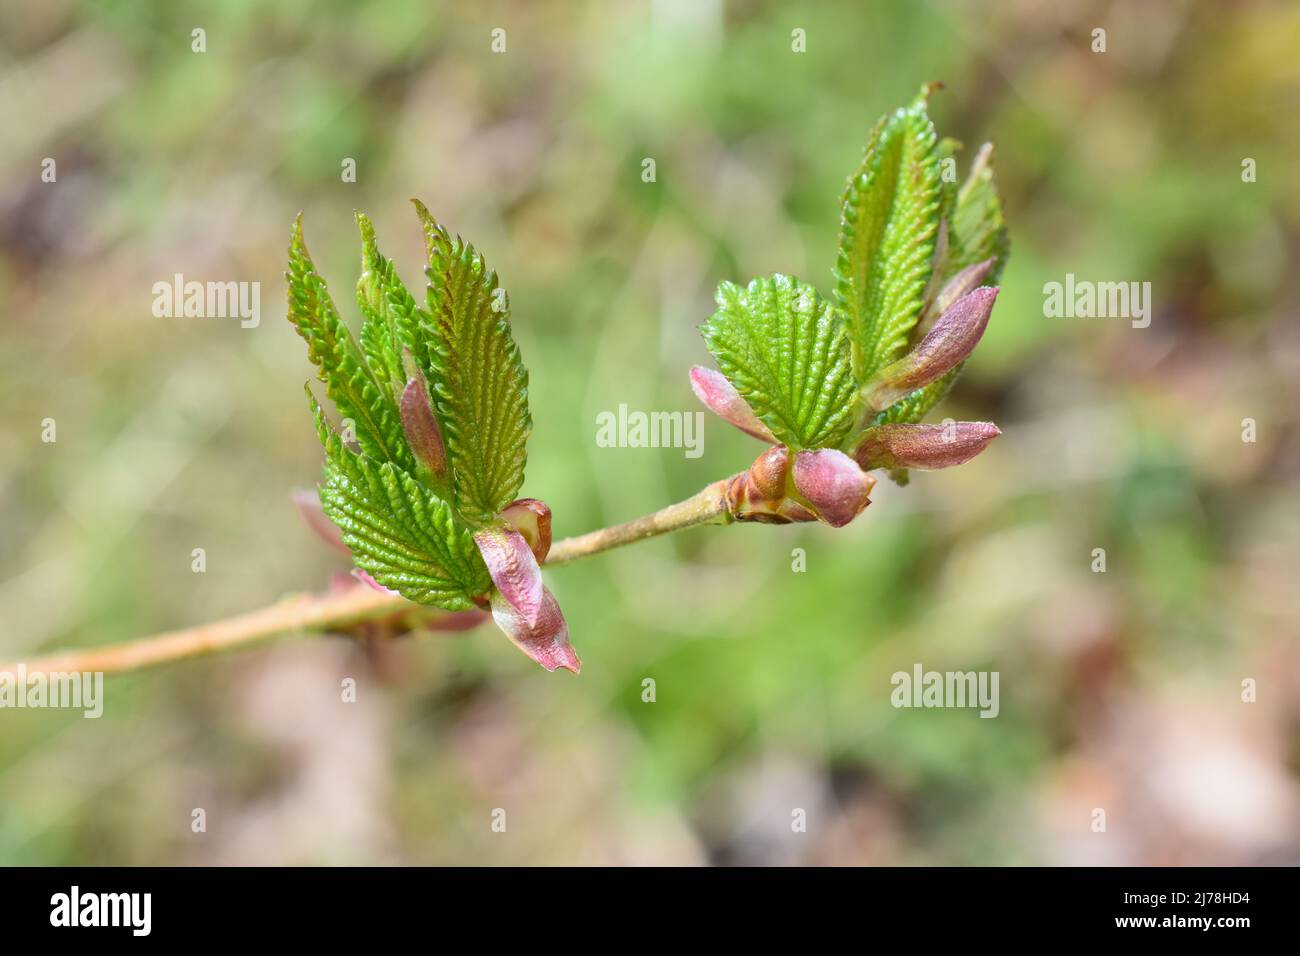 Au printemps, de jeunes nouvelles feuilles gerbent sur un arbre à noisettes européen, le corylus avellana Banque D'Images